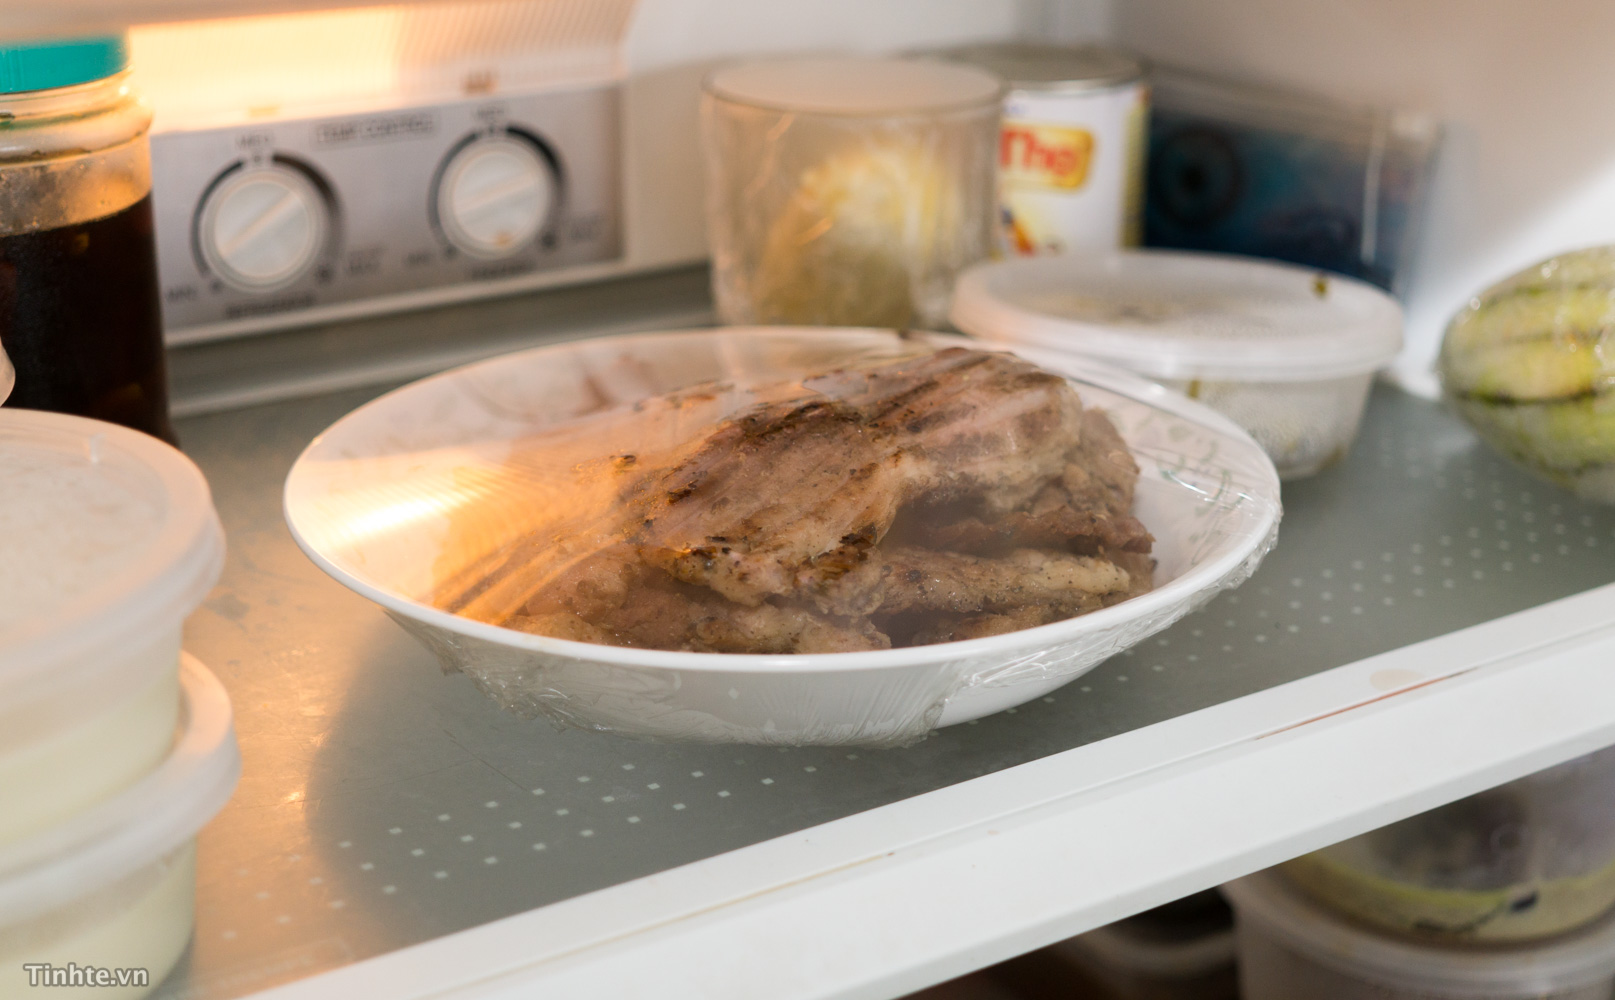 Có nên bọc thức ăn trước khi cho vào tủ lạnh?